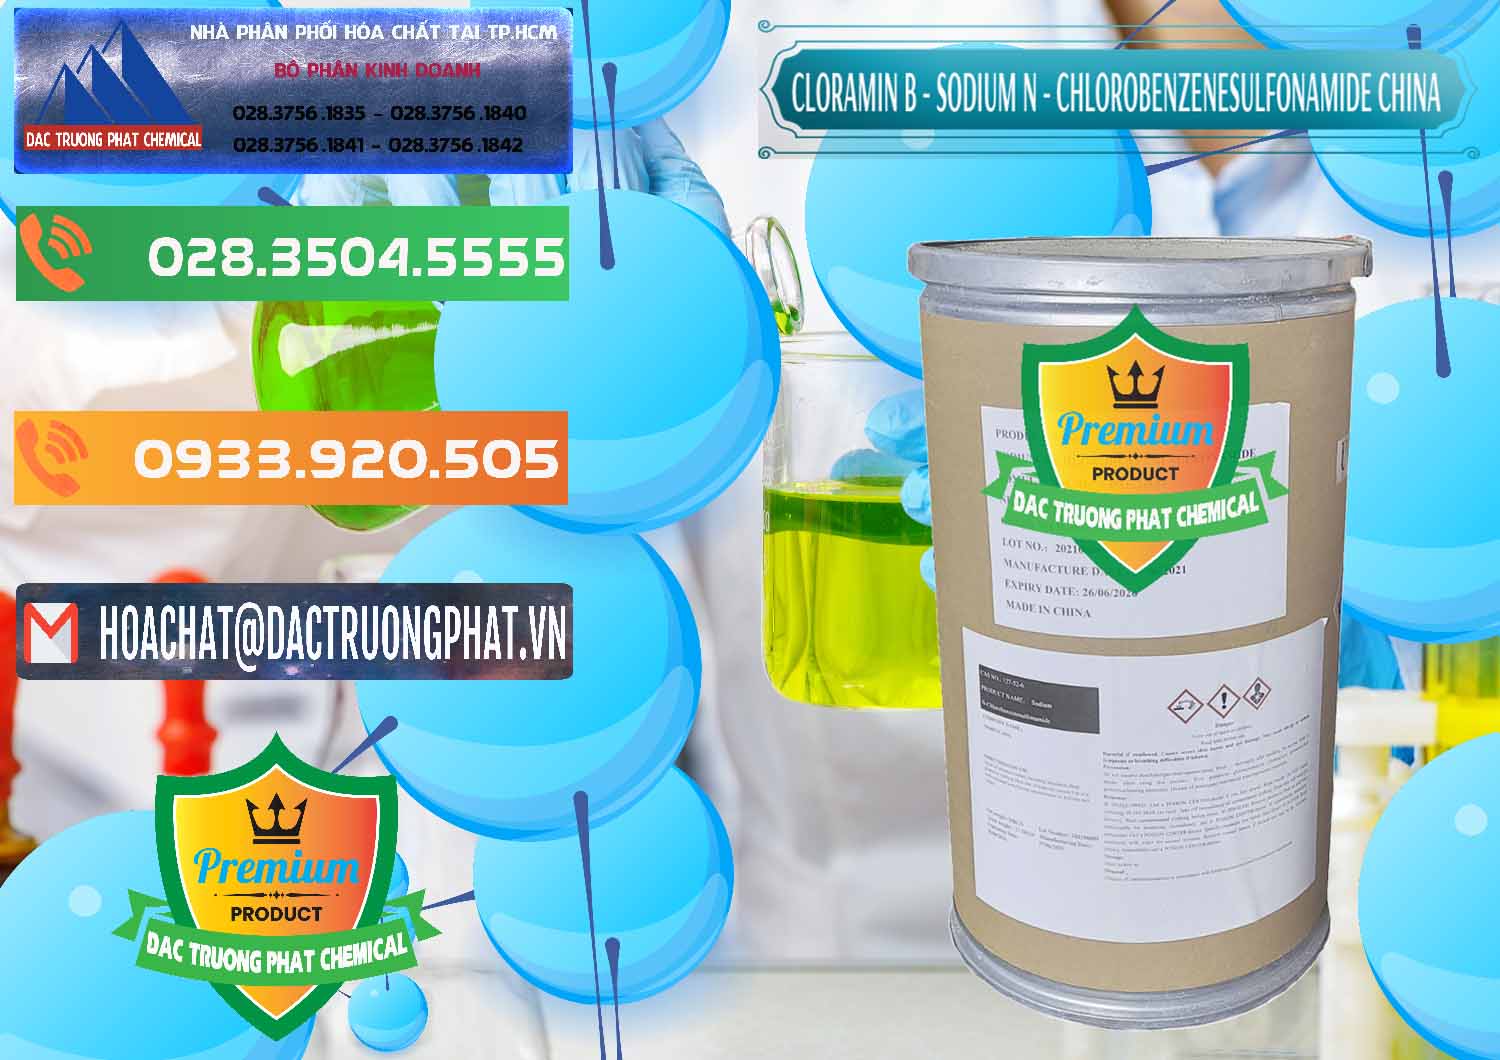 Nhập khẩu ( bán ) Cloramin B Khử Trùng, Diệt Khuẩn Trung Quốc China - 0298 - Cty phân phối ( cung cấp ) hóa chất tại TP.HCM - hoachatxulynuoc.com.vn